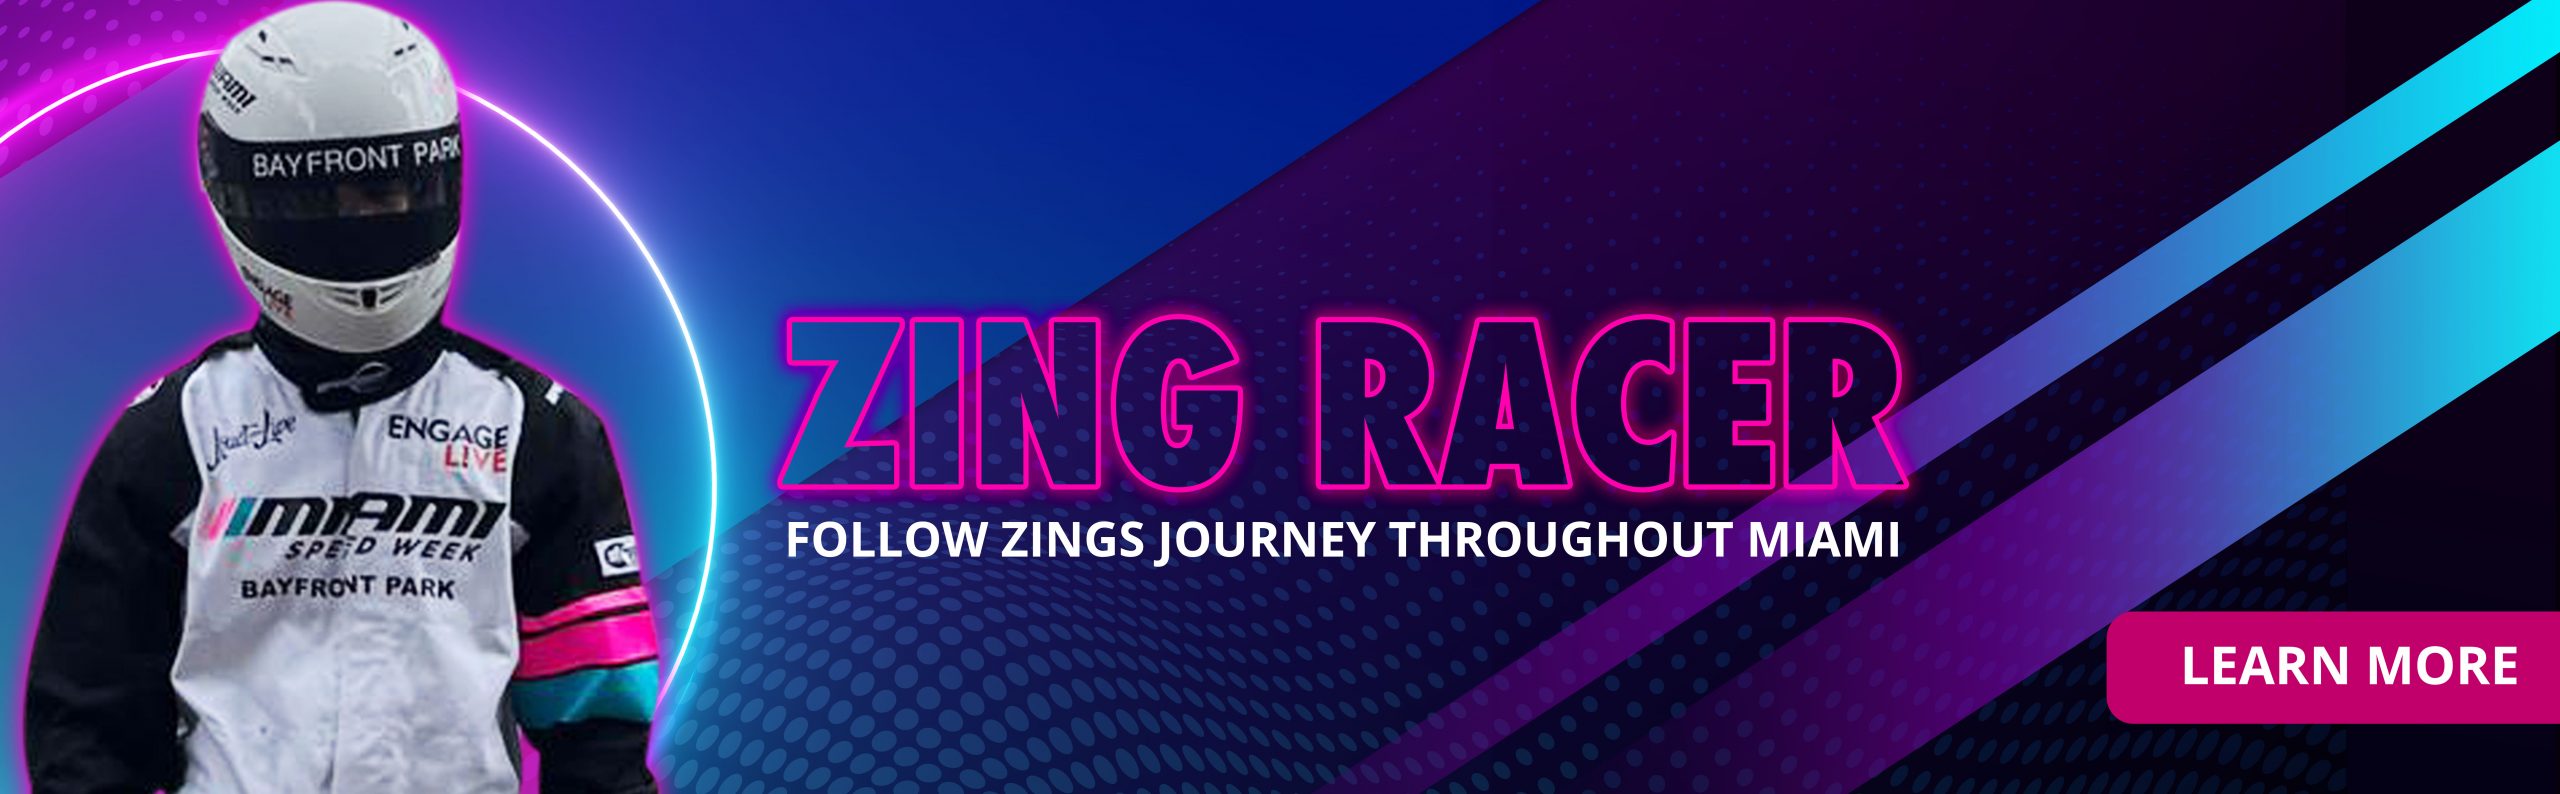 Zing-Racer-Banner-